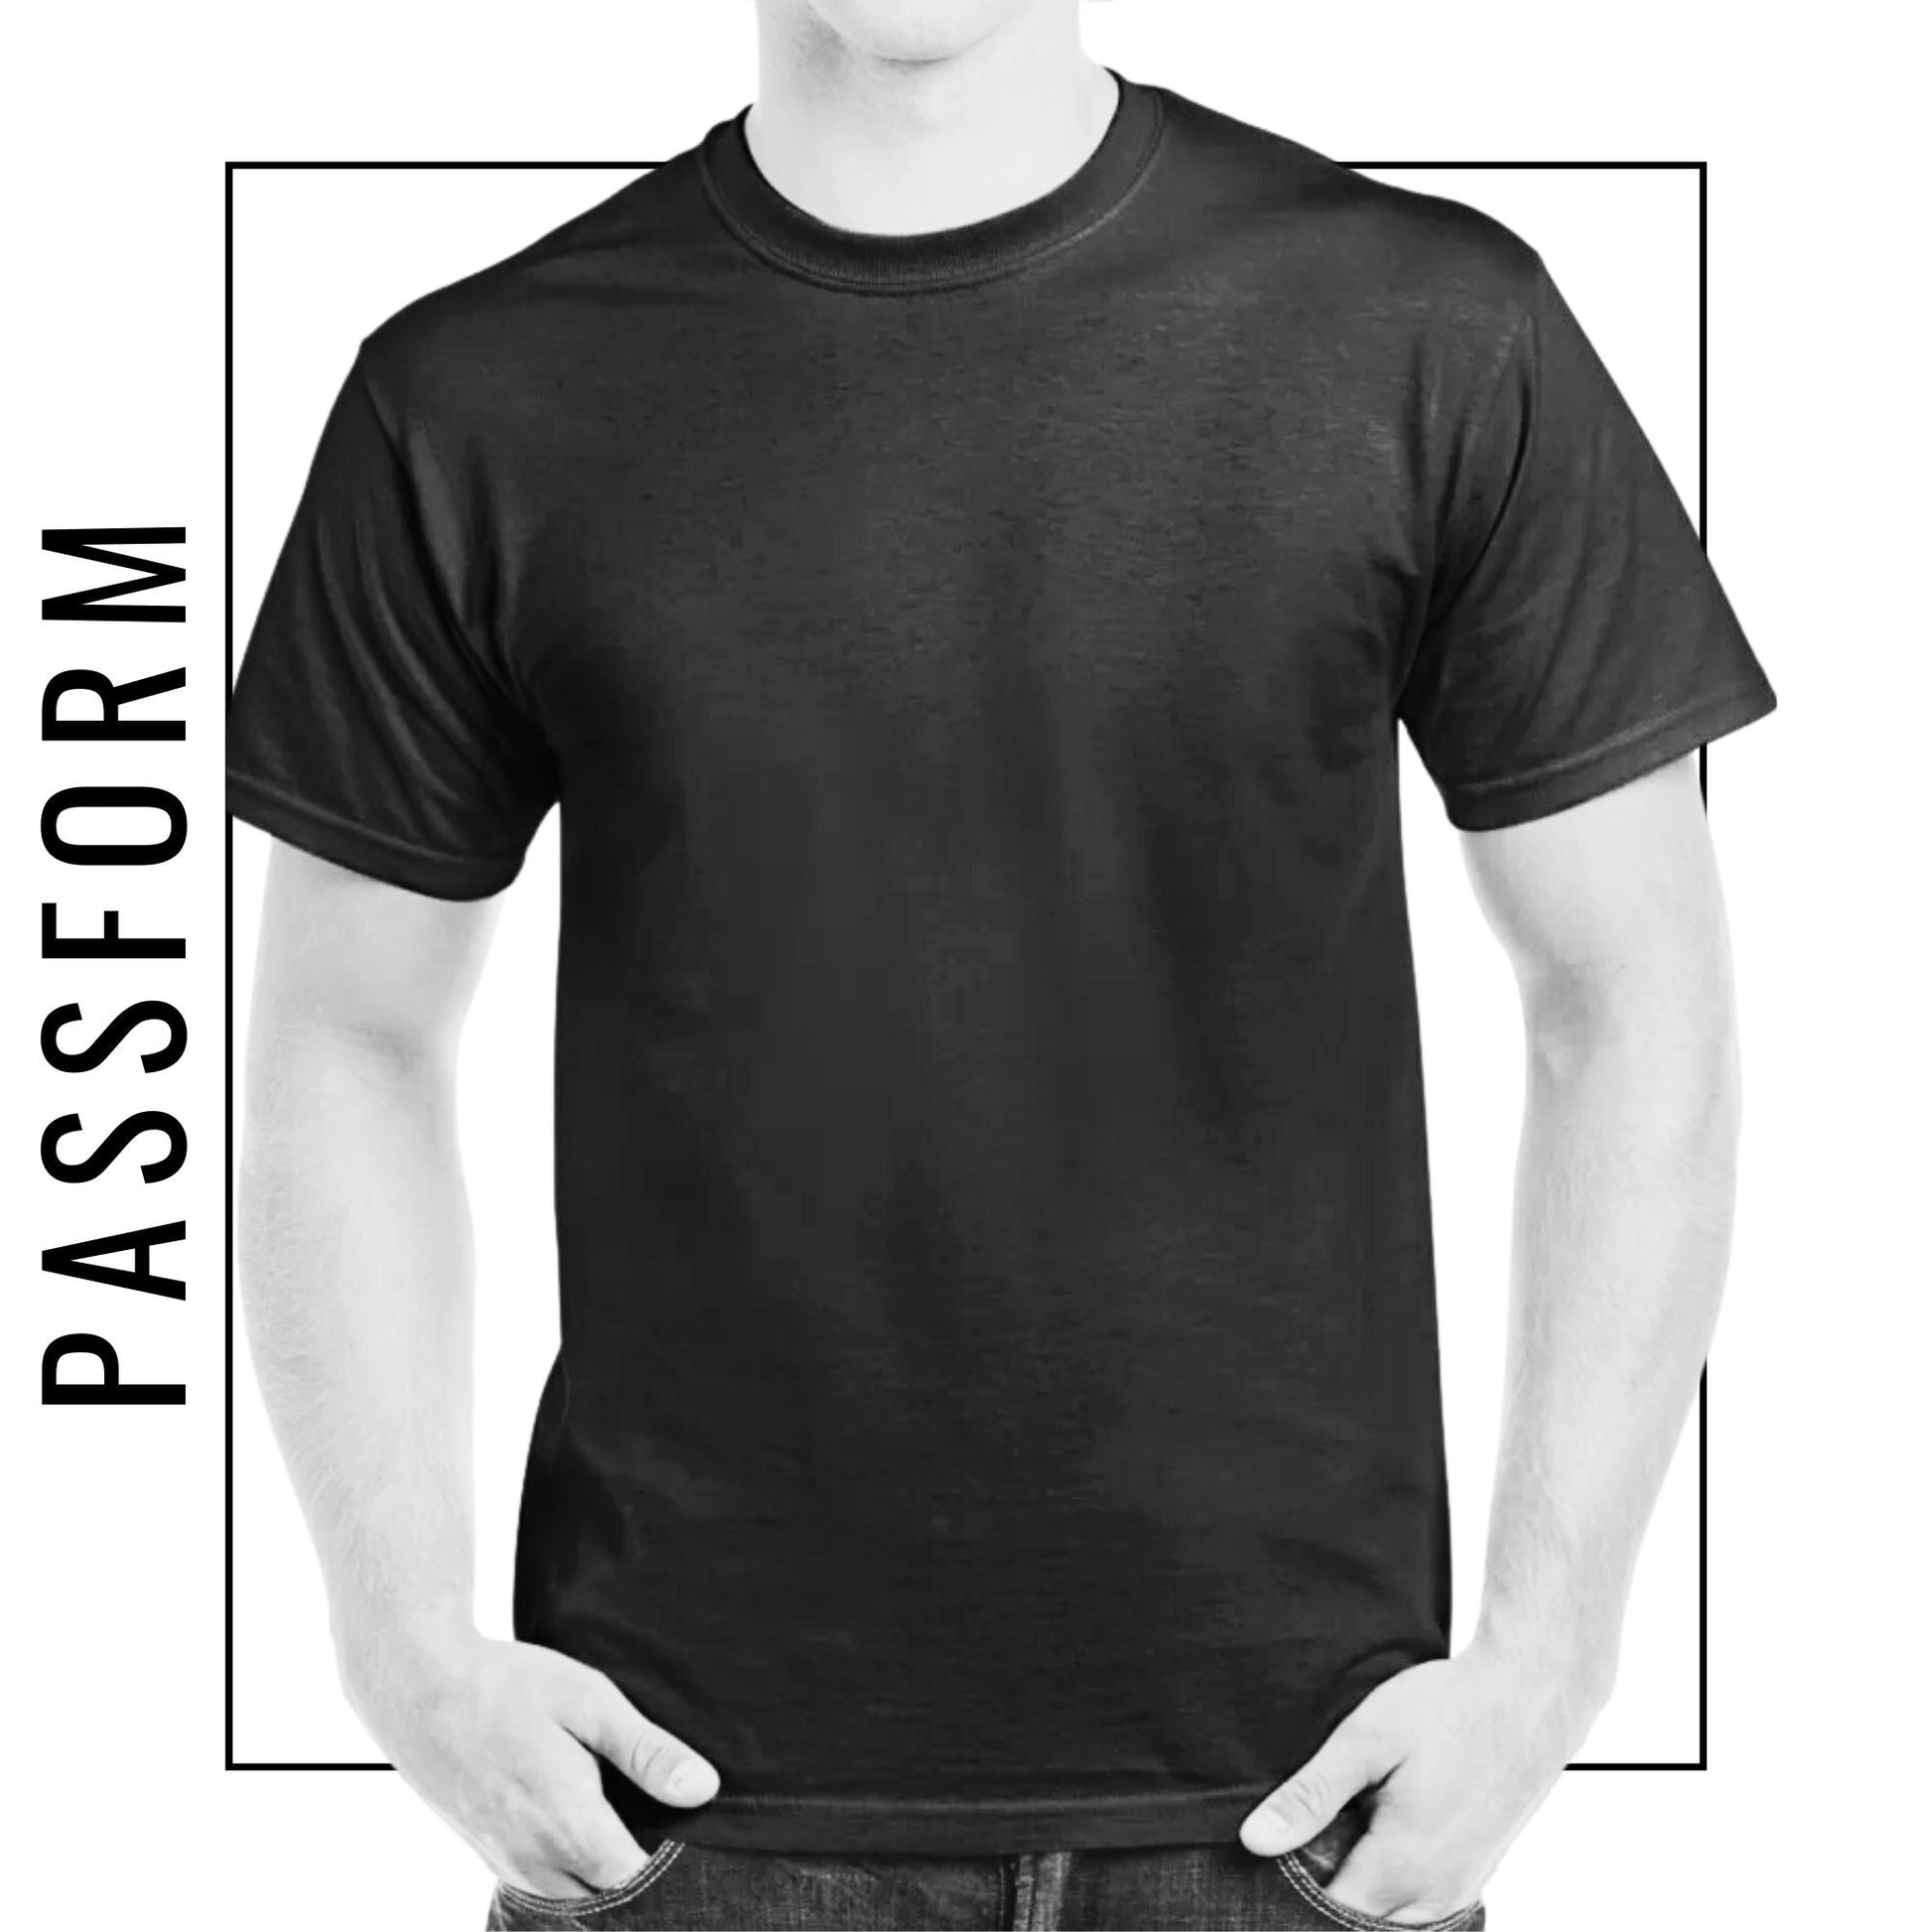 I love 09 - Unisex T-Shirt-Fanspirit